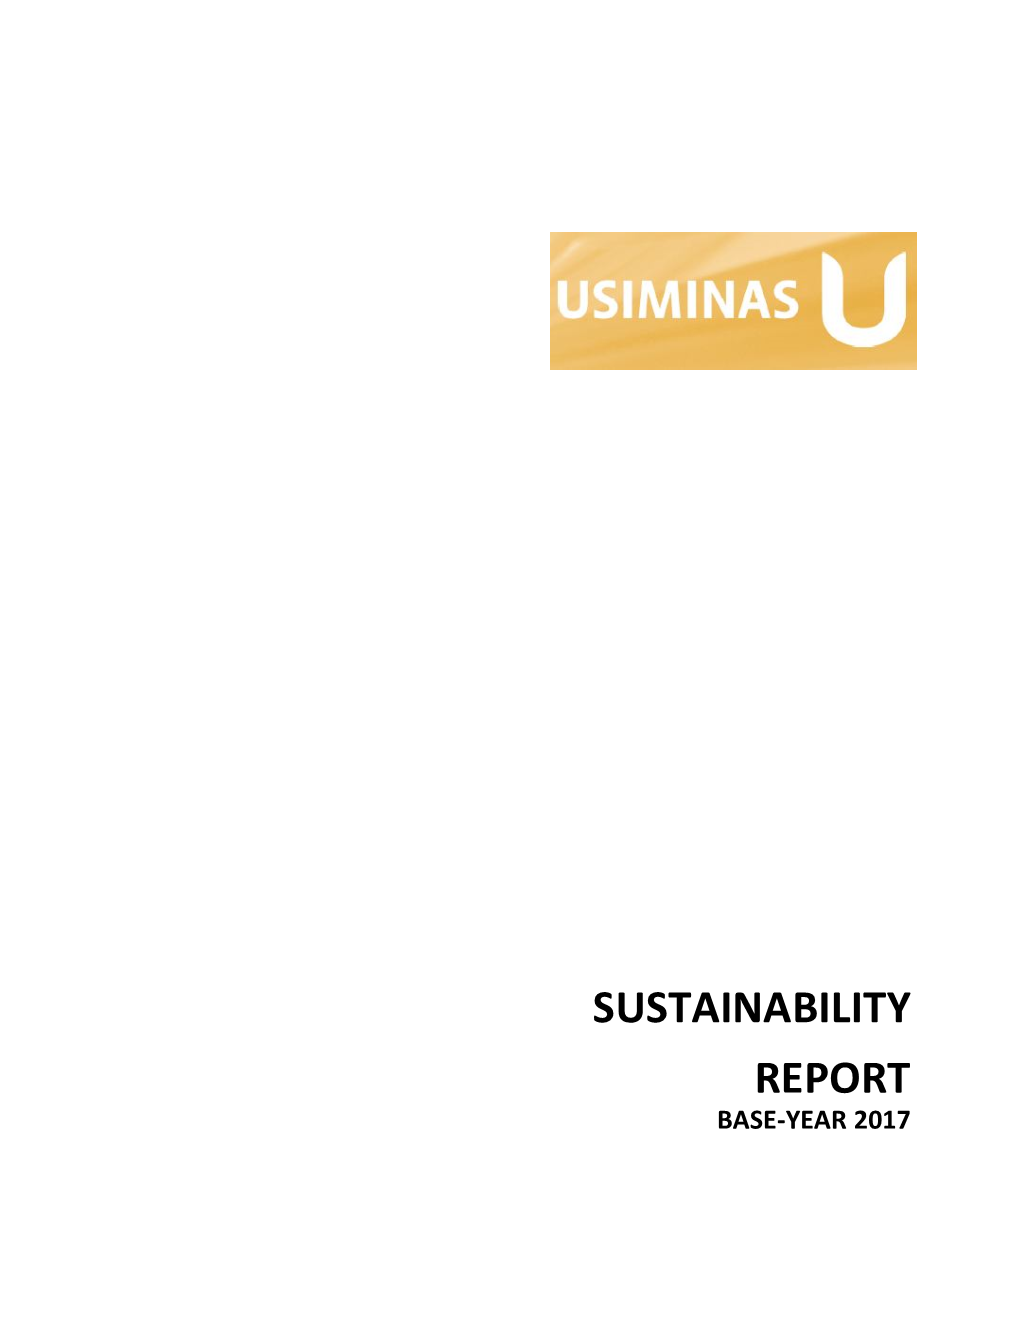 Sustainability Report Base-Year 2017